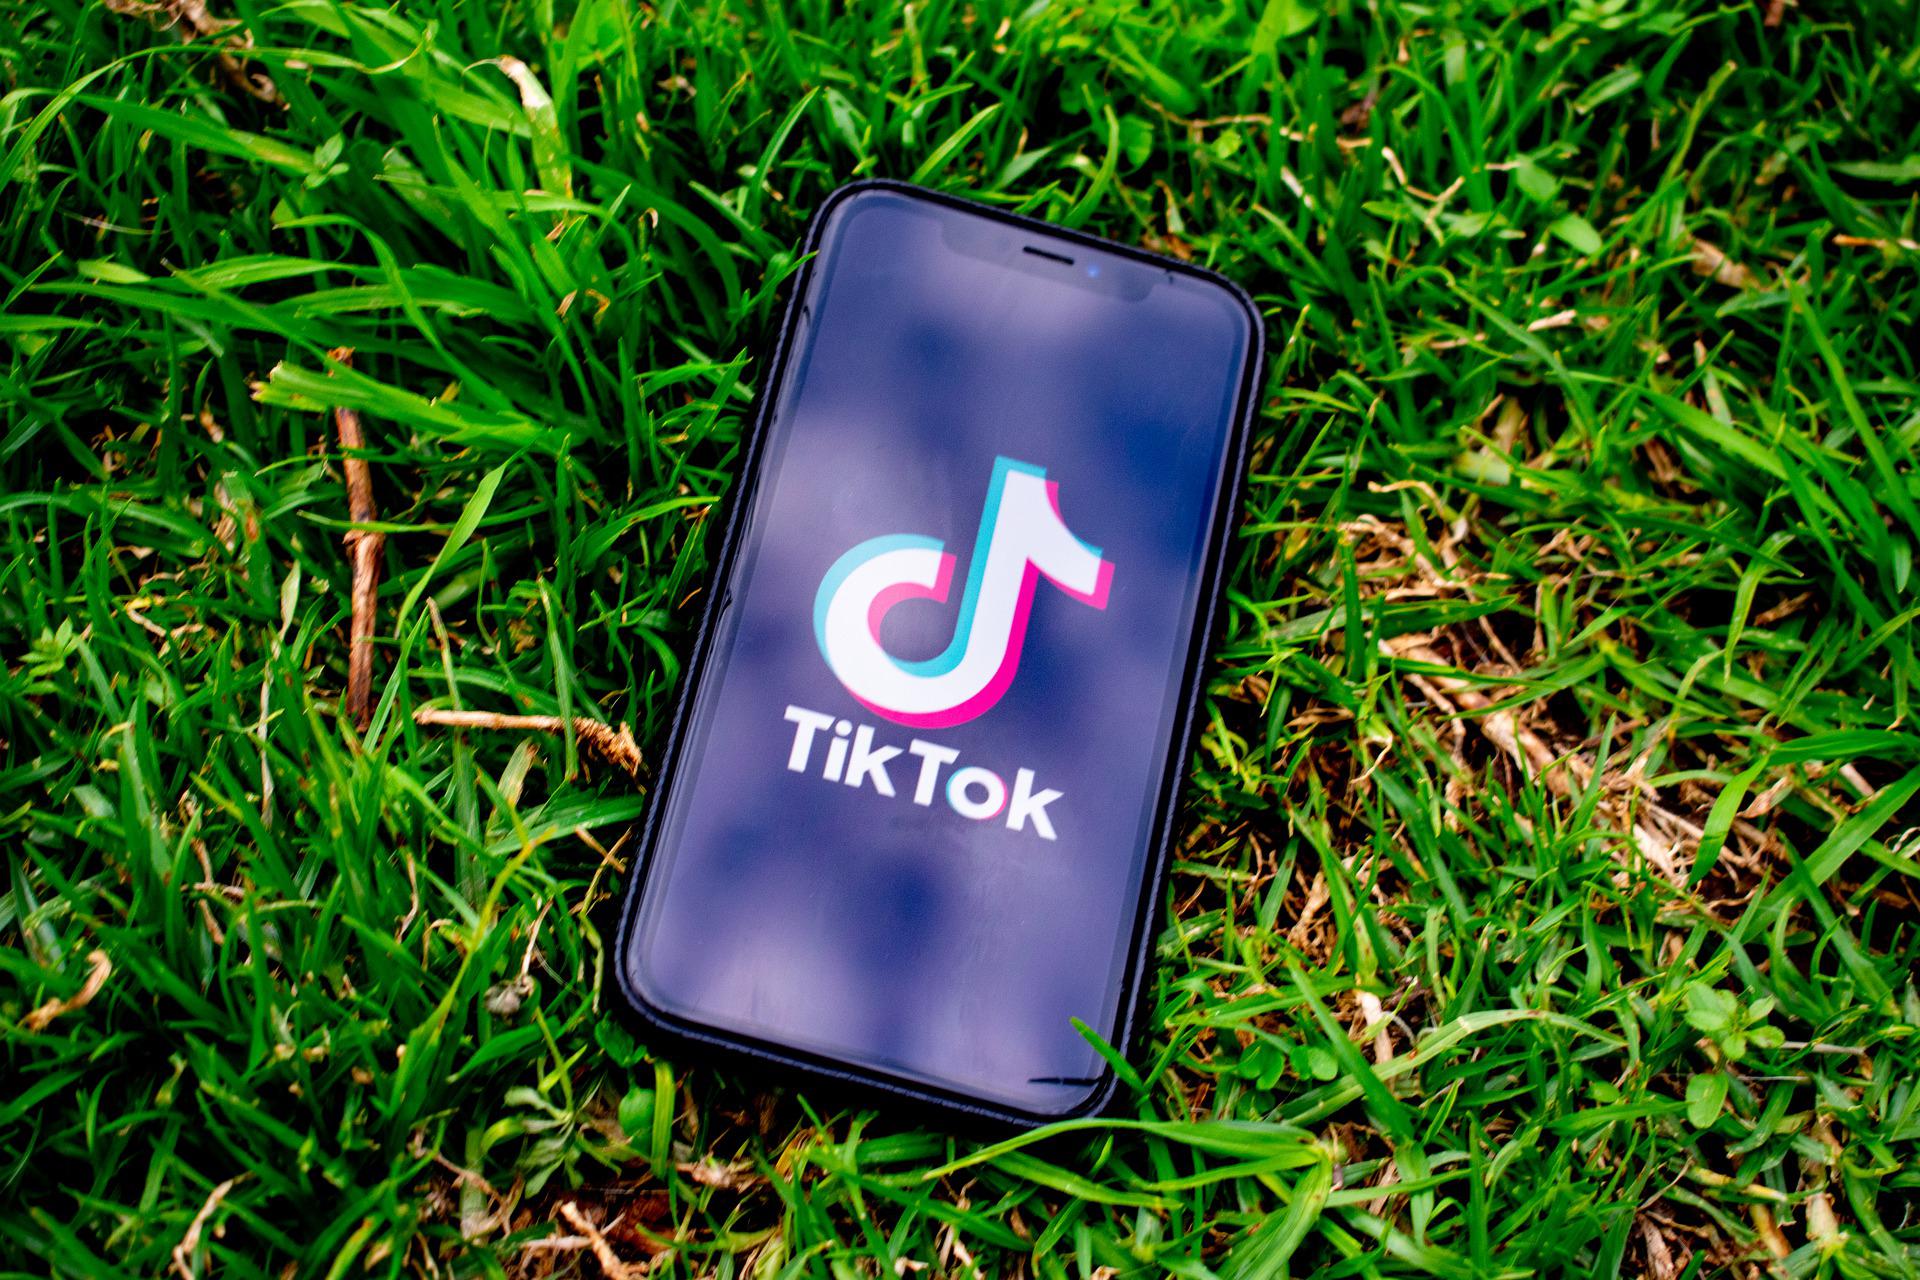 TikTok app on phone in a field